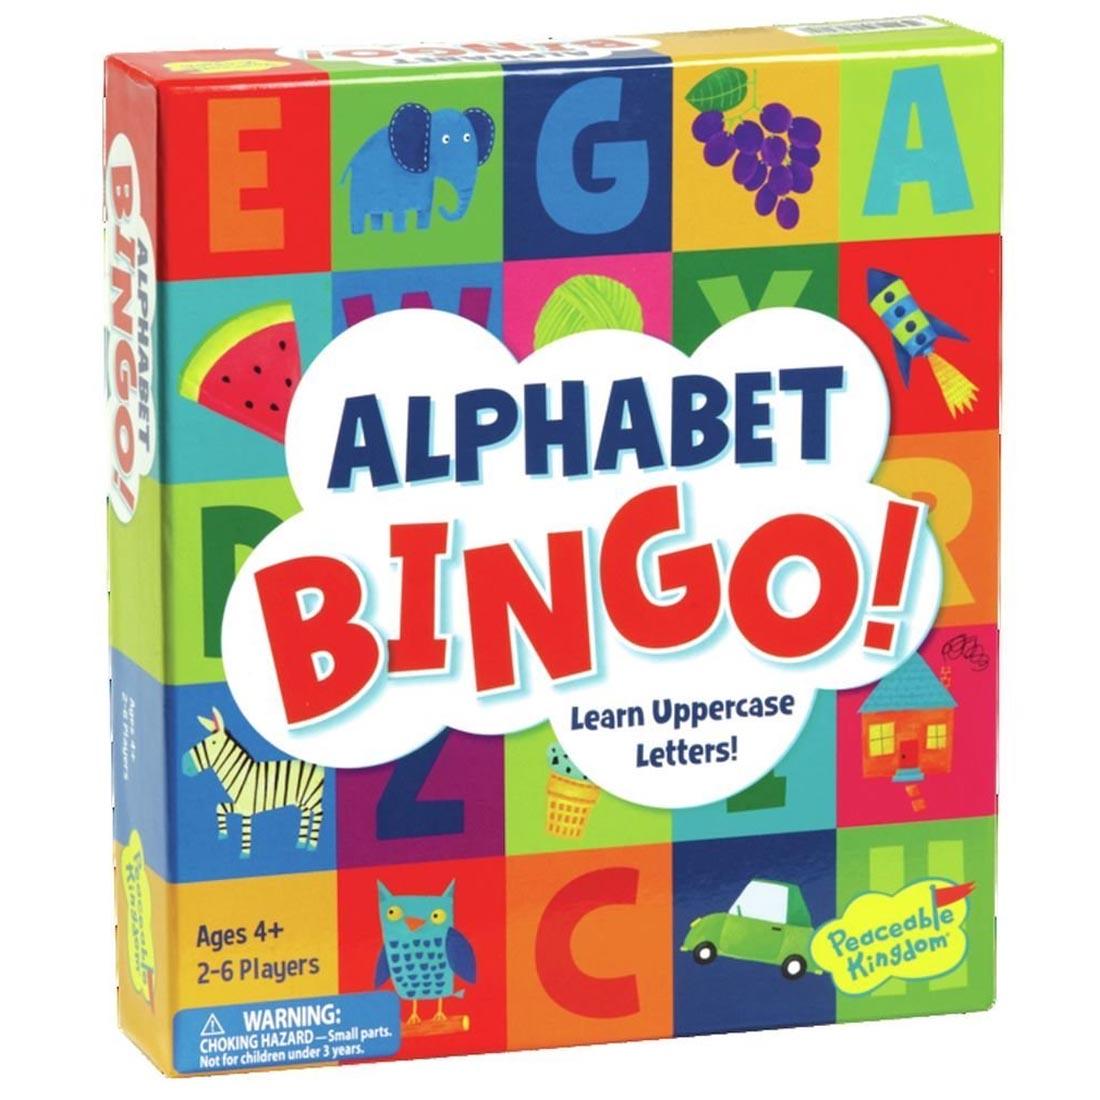 Alphabet Bingo by Peaceable Kingdom